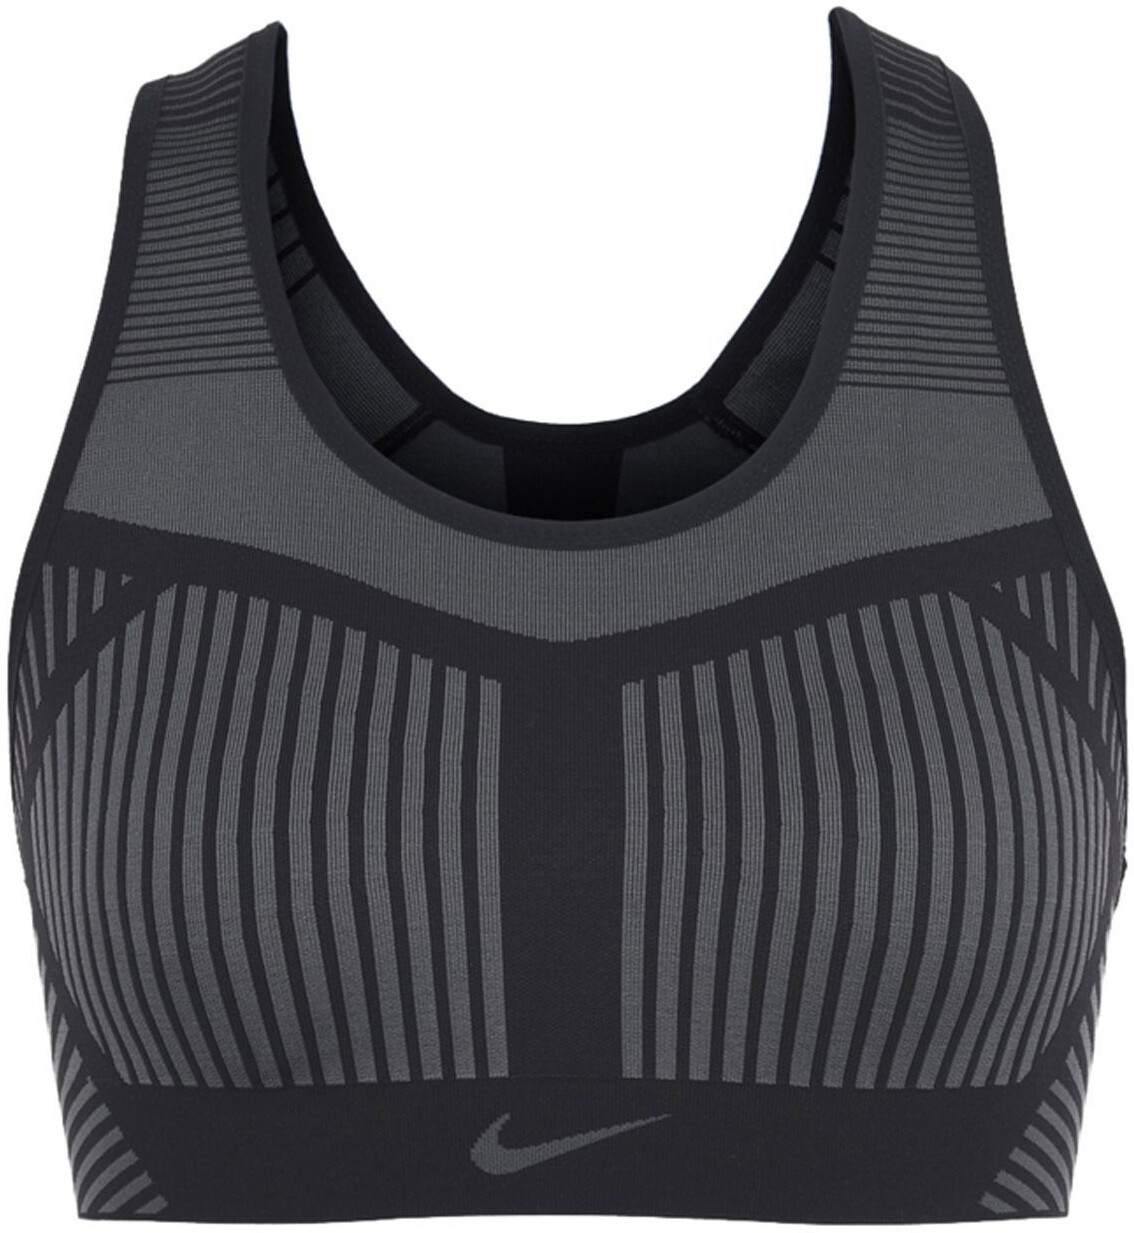 Buy Nike FE/NOM Flyknit Sports-Bra from £8.00 (Today) – Best